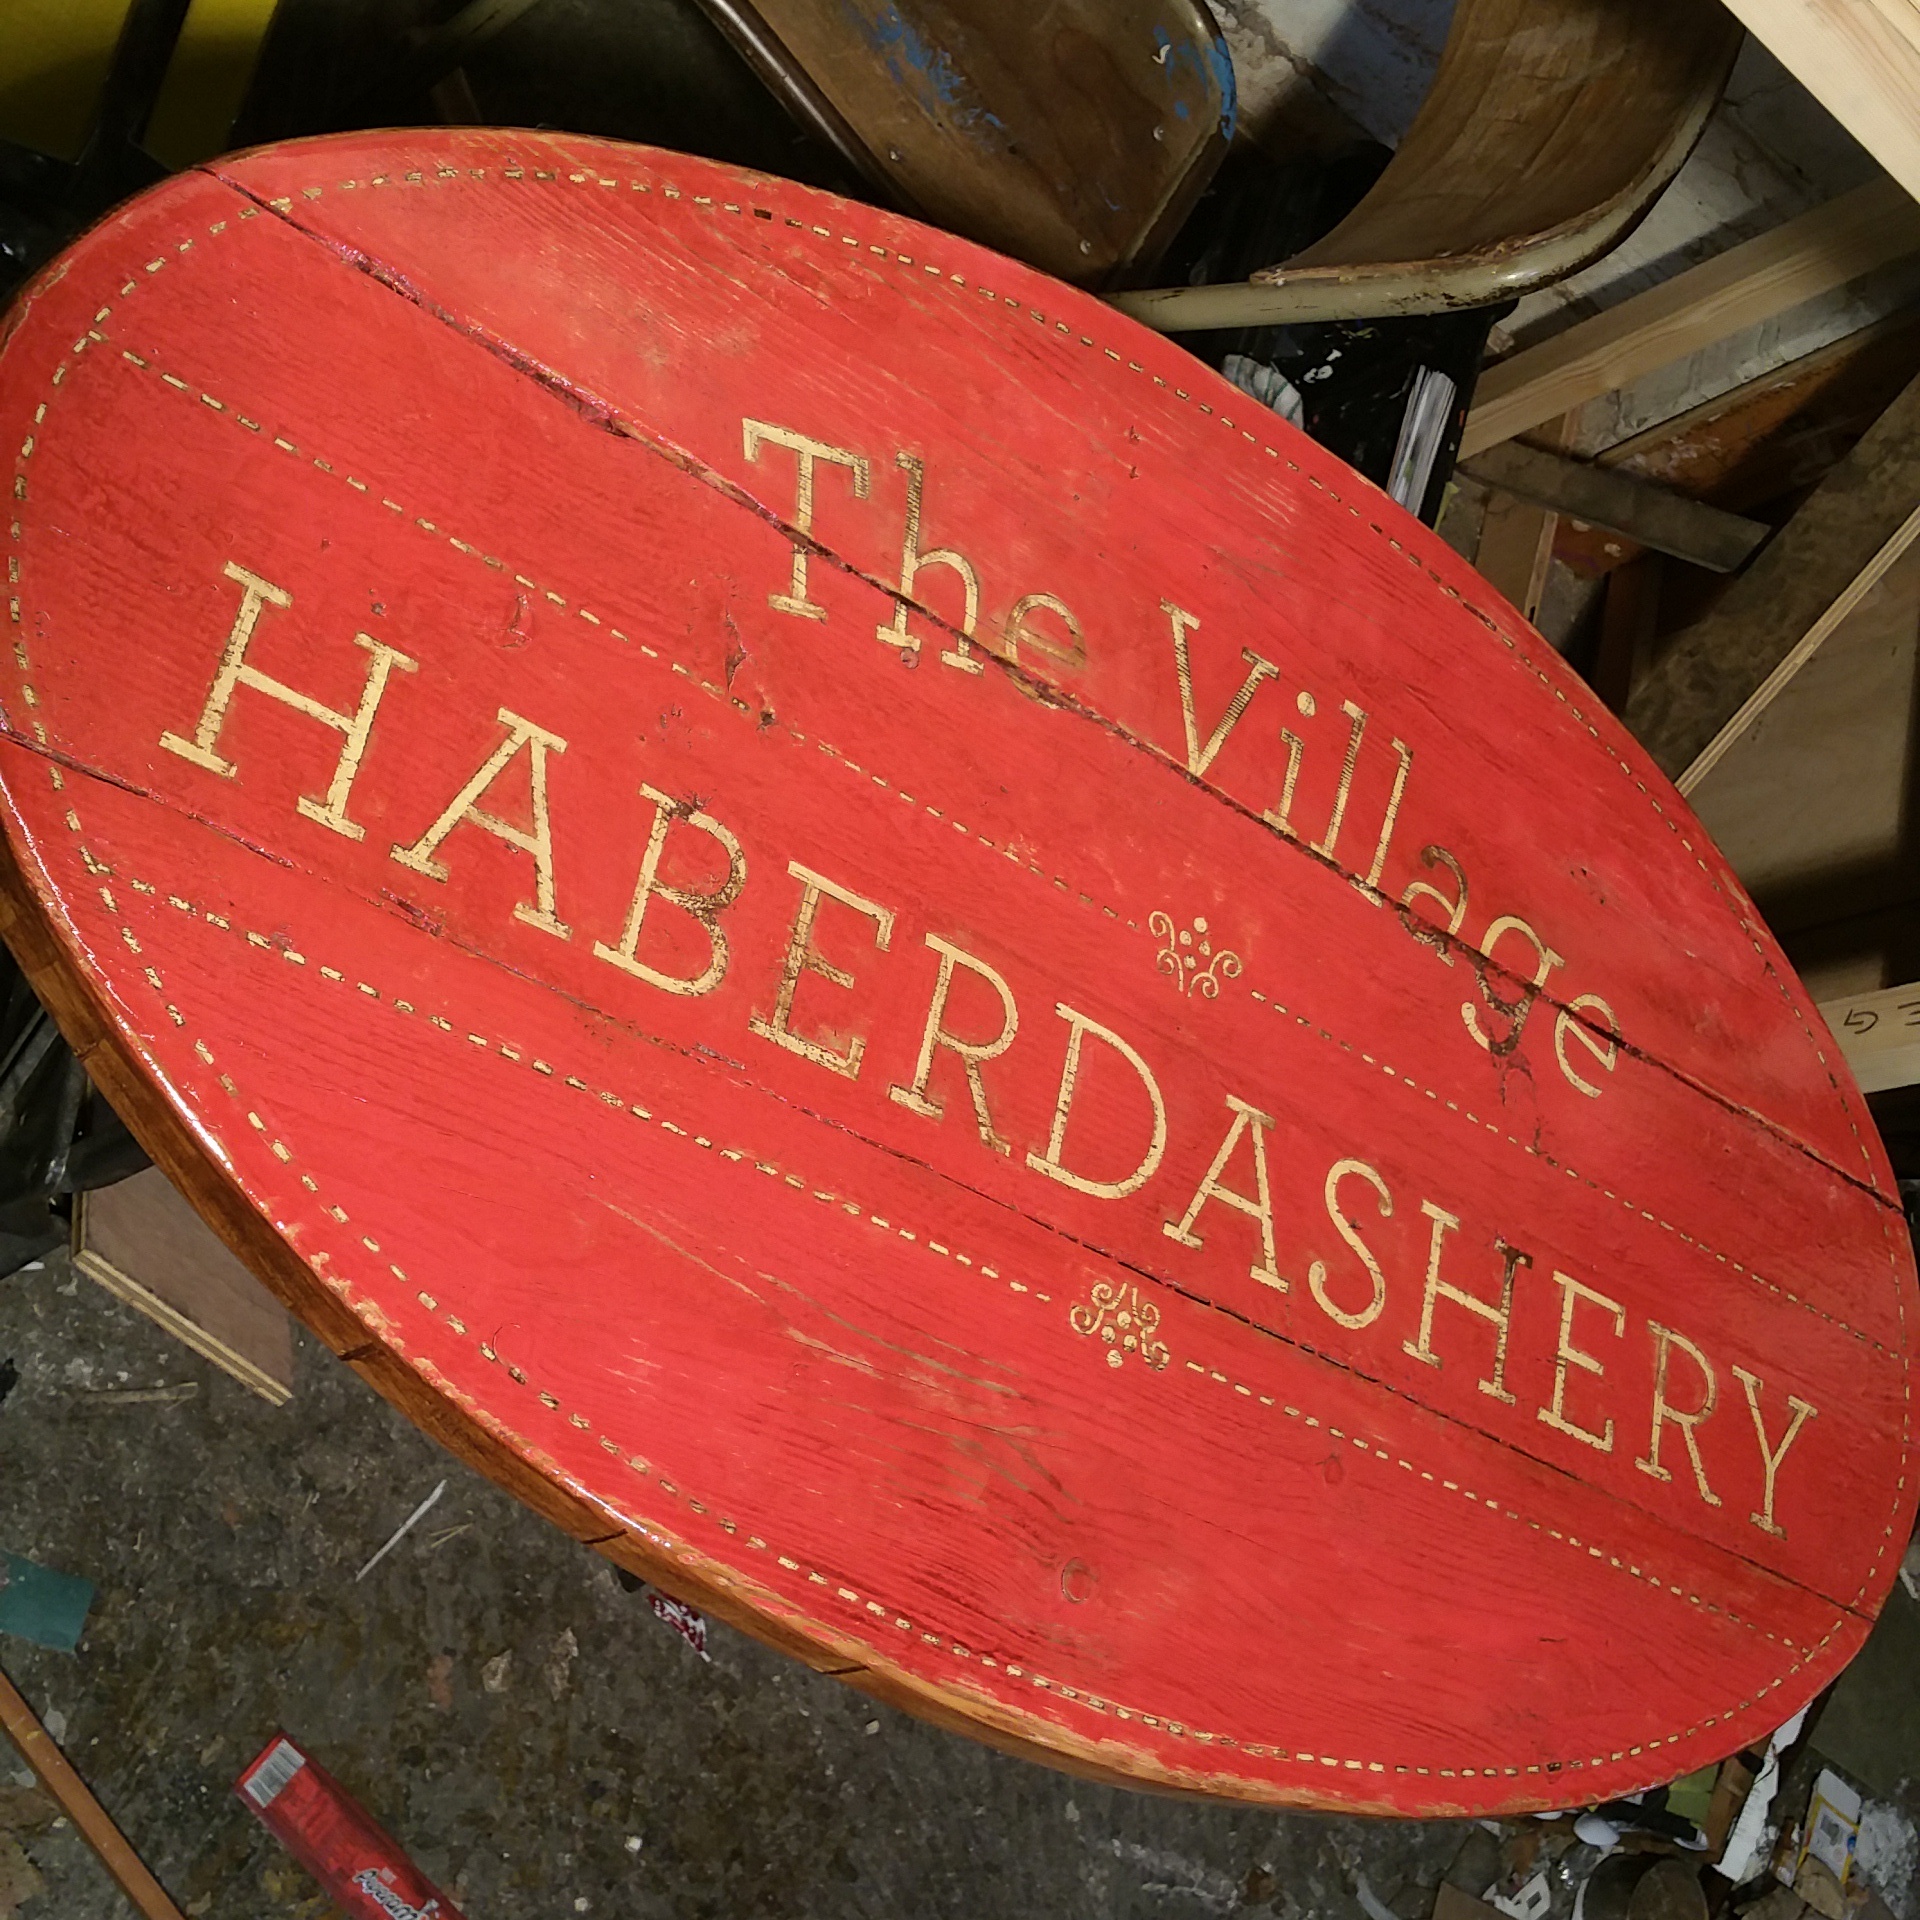 The Village Haberdashery